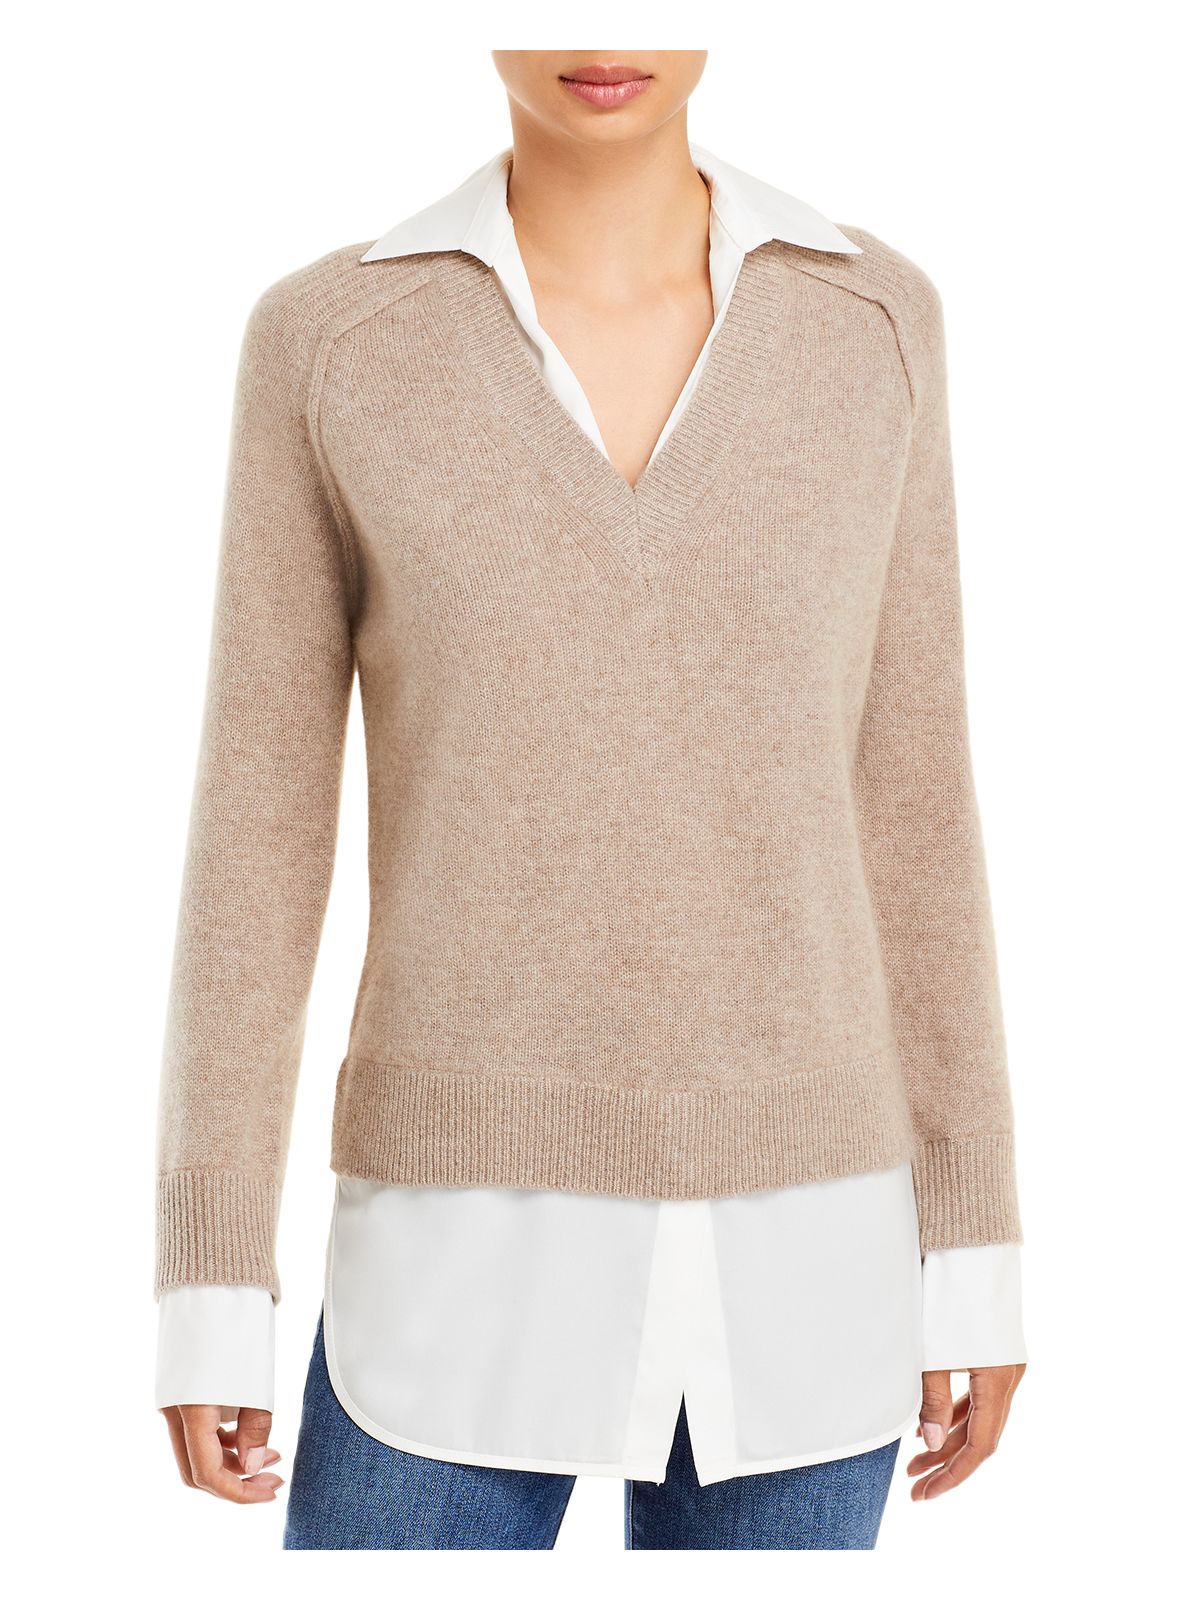 Designer Brand Womens Beige Long Sleeve V Neck Sweater M